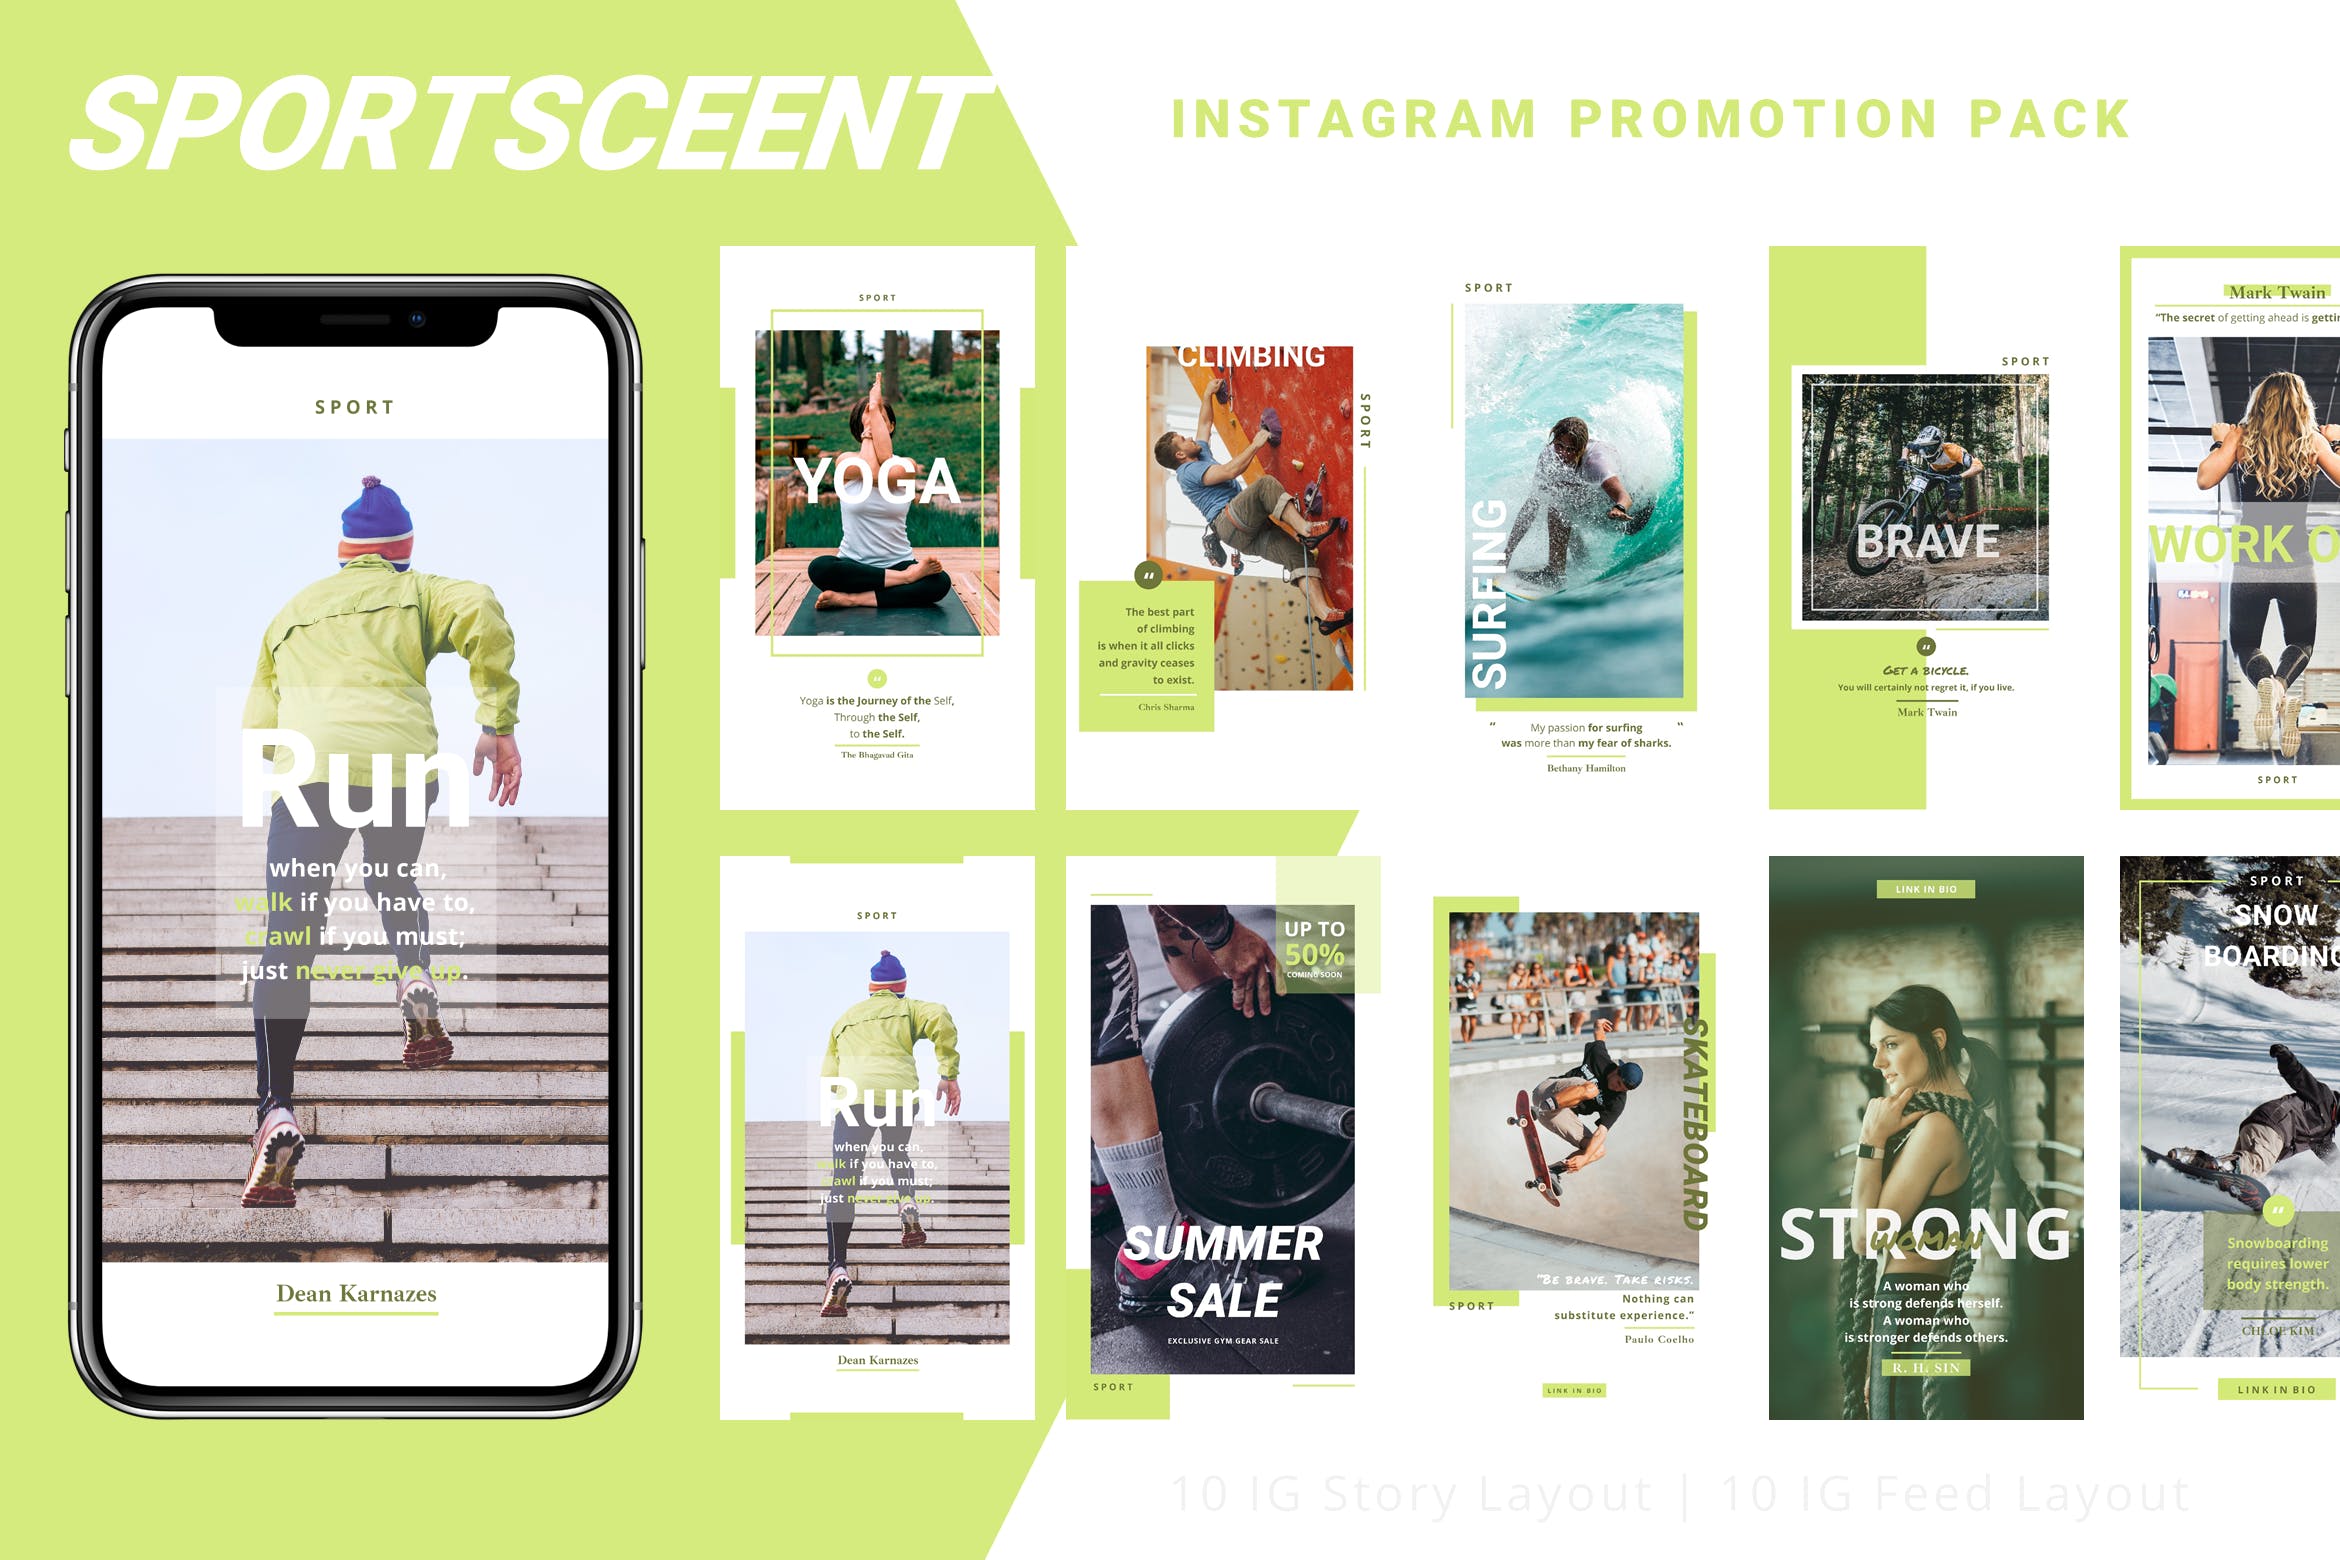 体育运动主题Instagram品牌故事设计模板素材库精选 Sportsceent – Instagram Story Pack插图